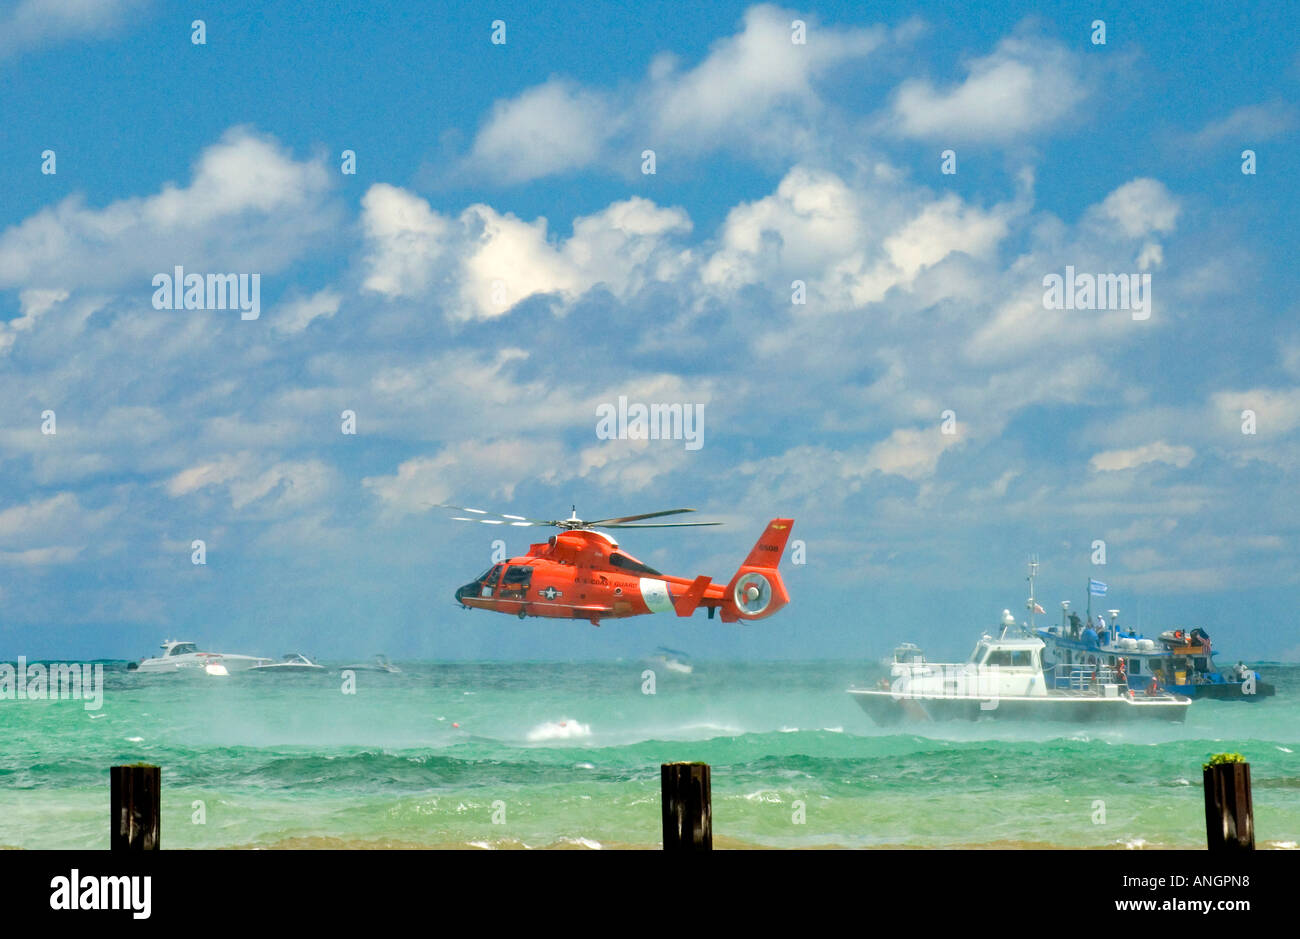 Coast Guard per soccorso in acqua Foto Stock